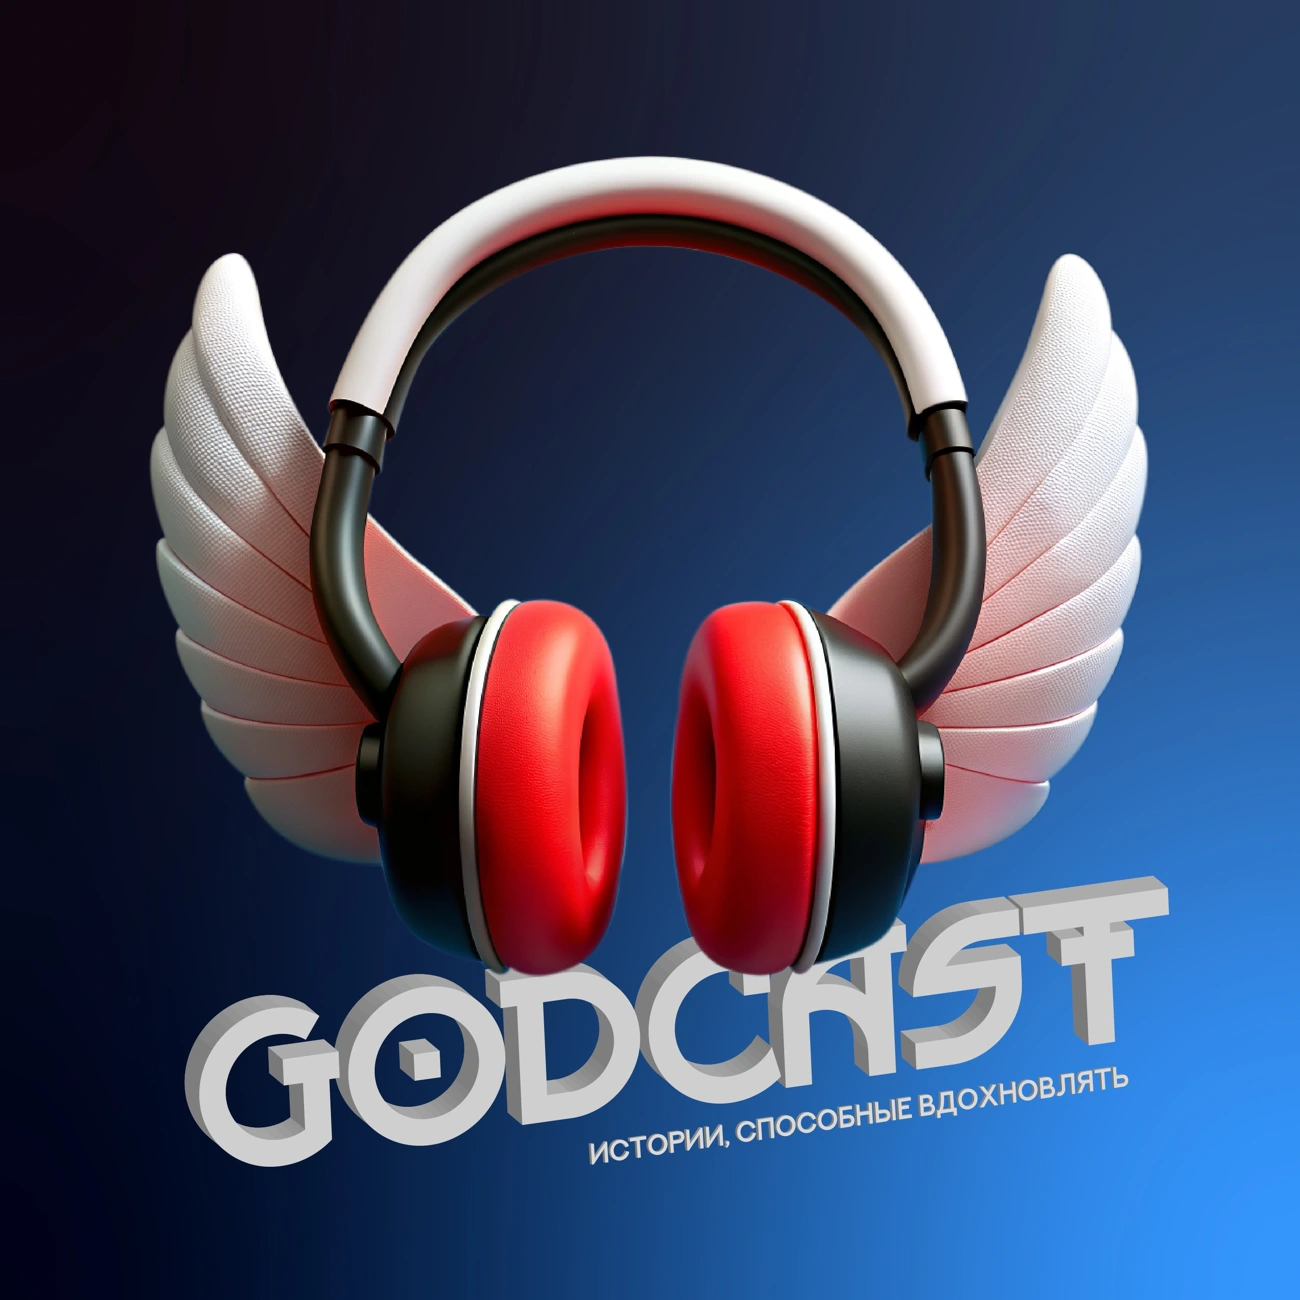 Godcast